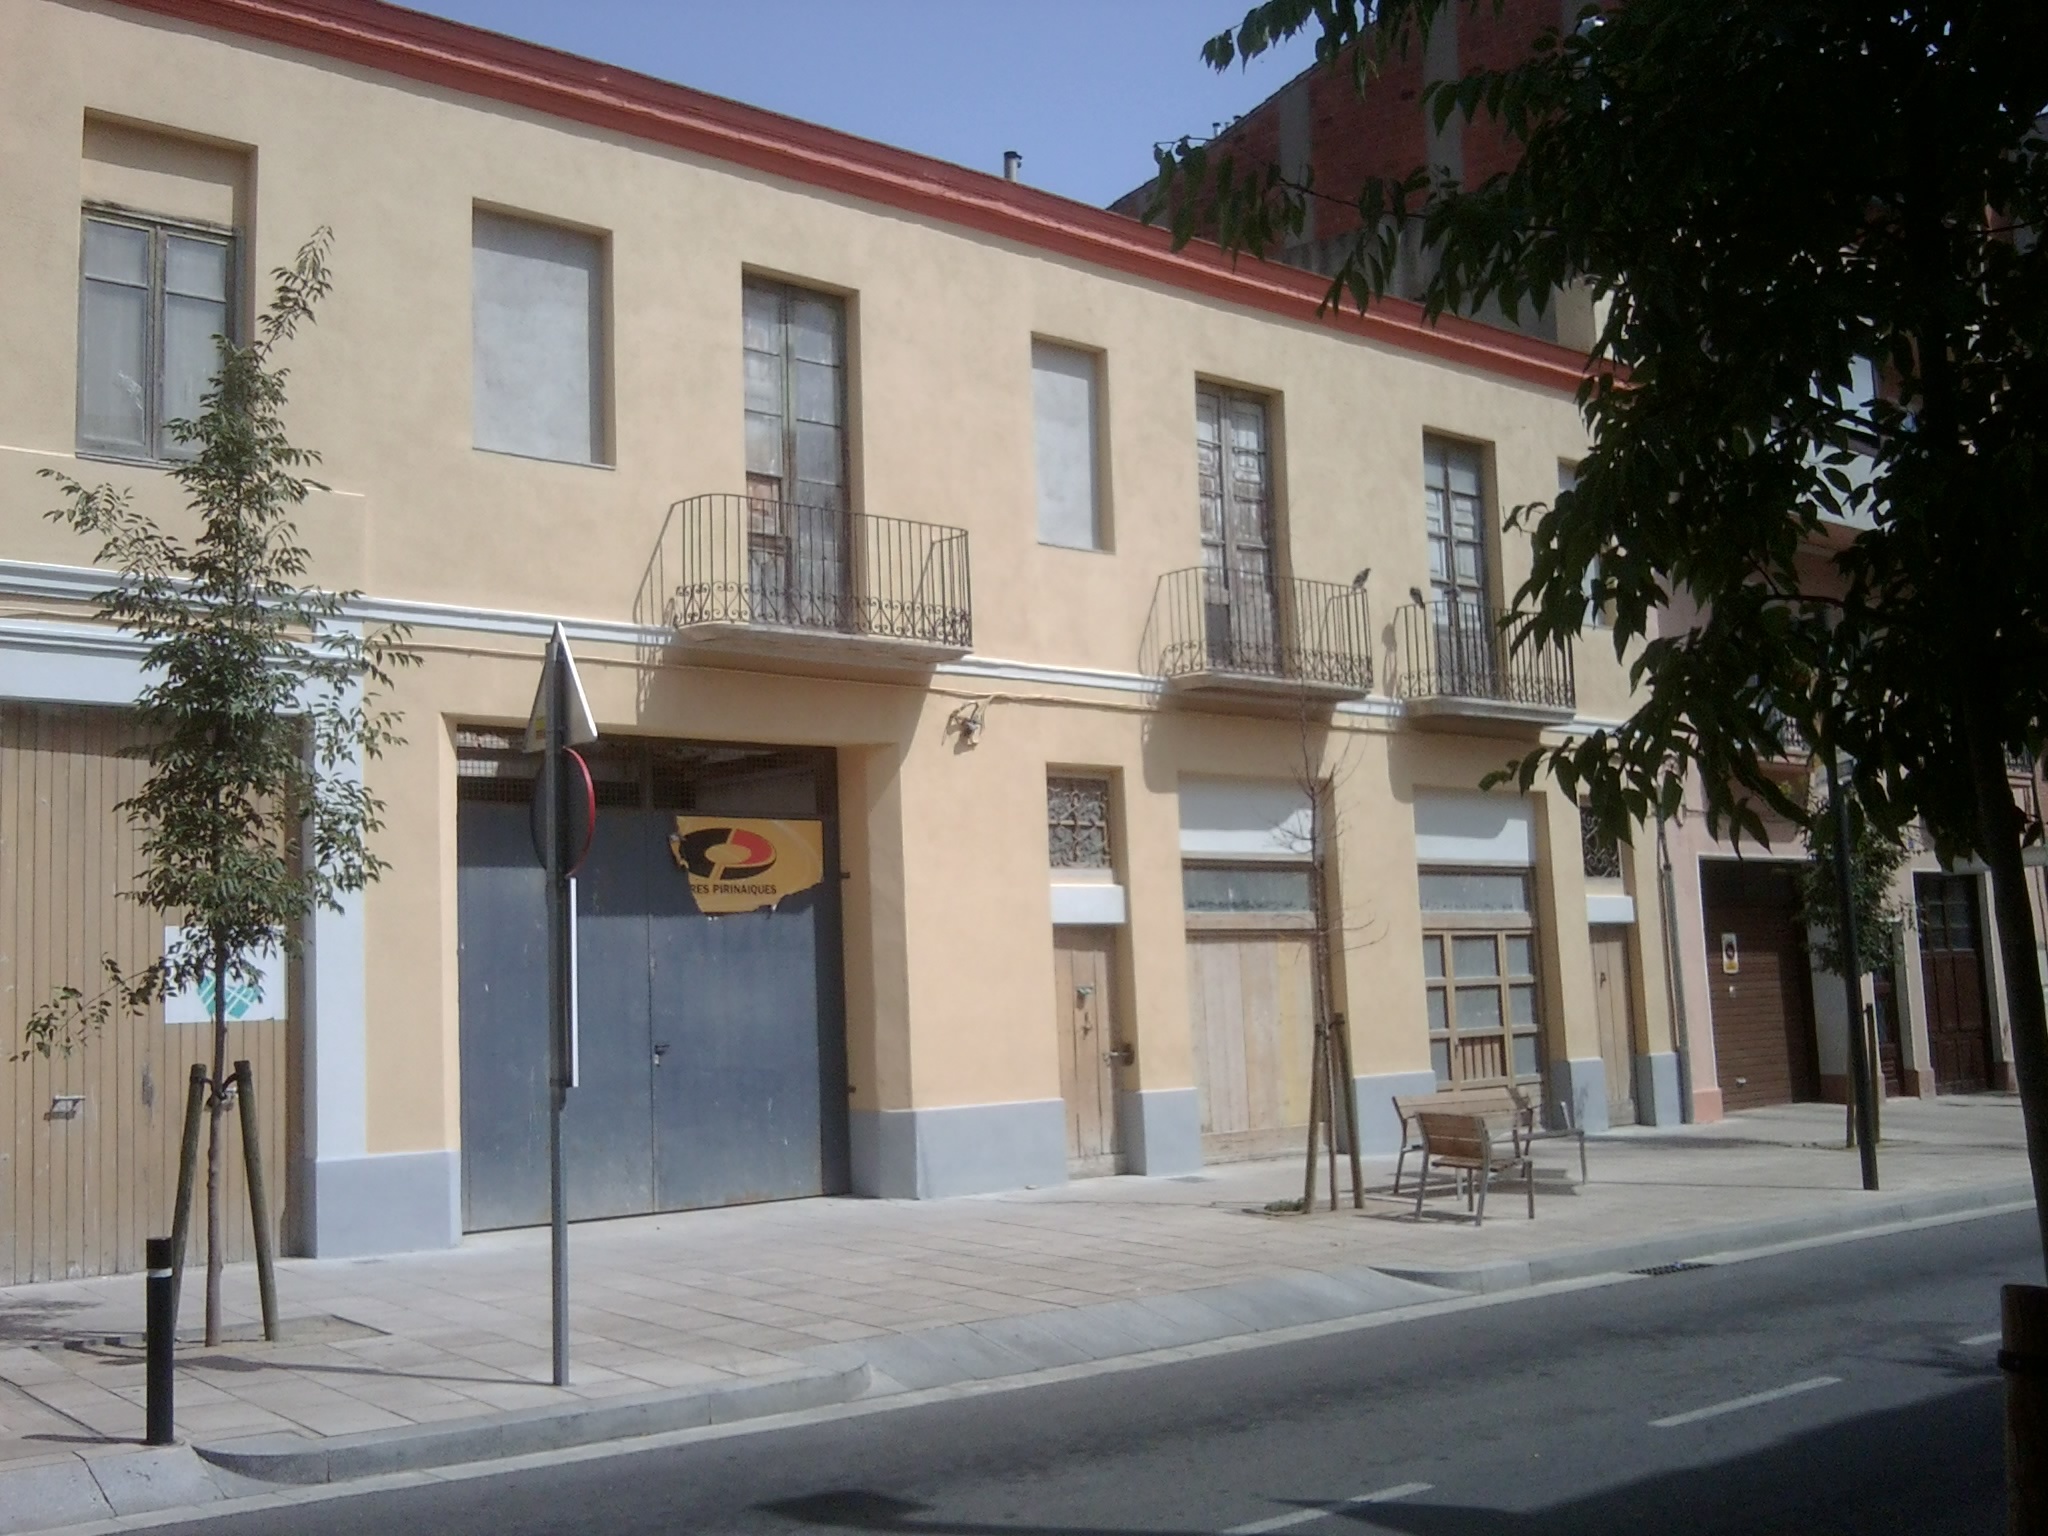 Substitució de coberta i consolidació estructural a Figueres